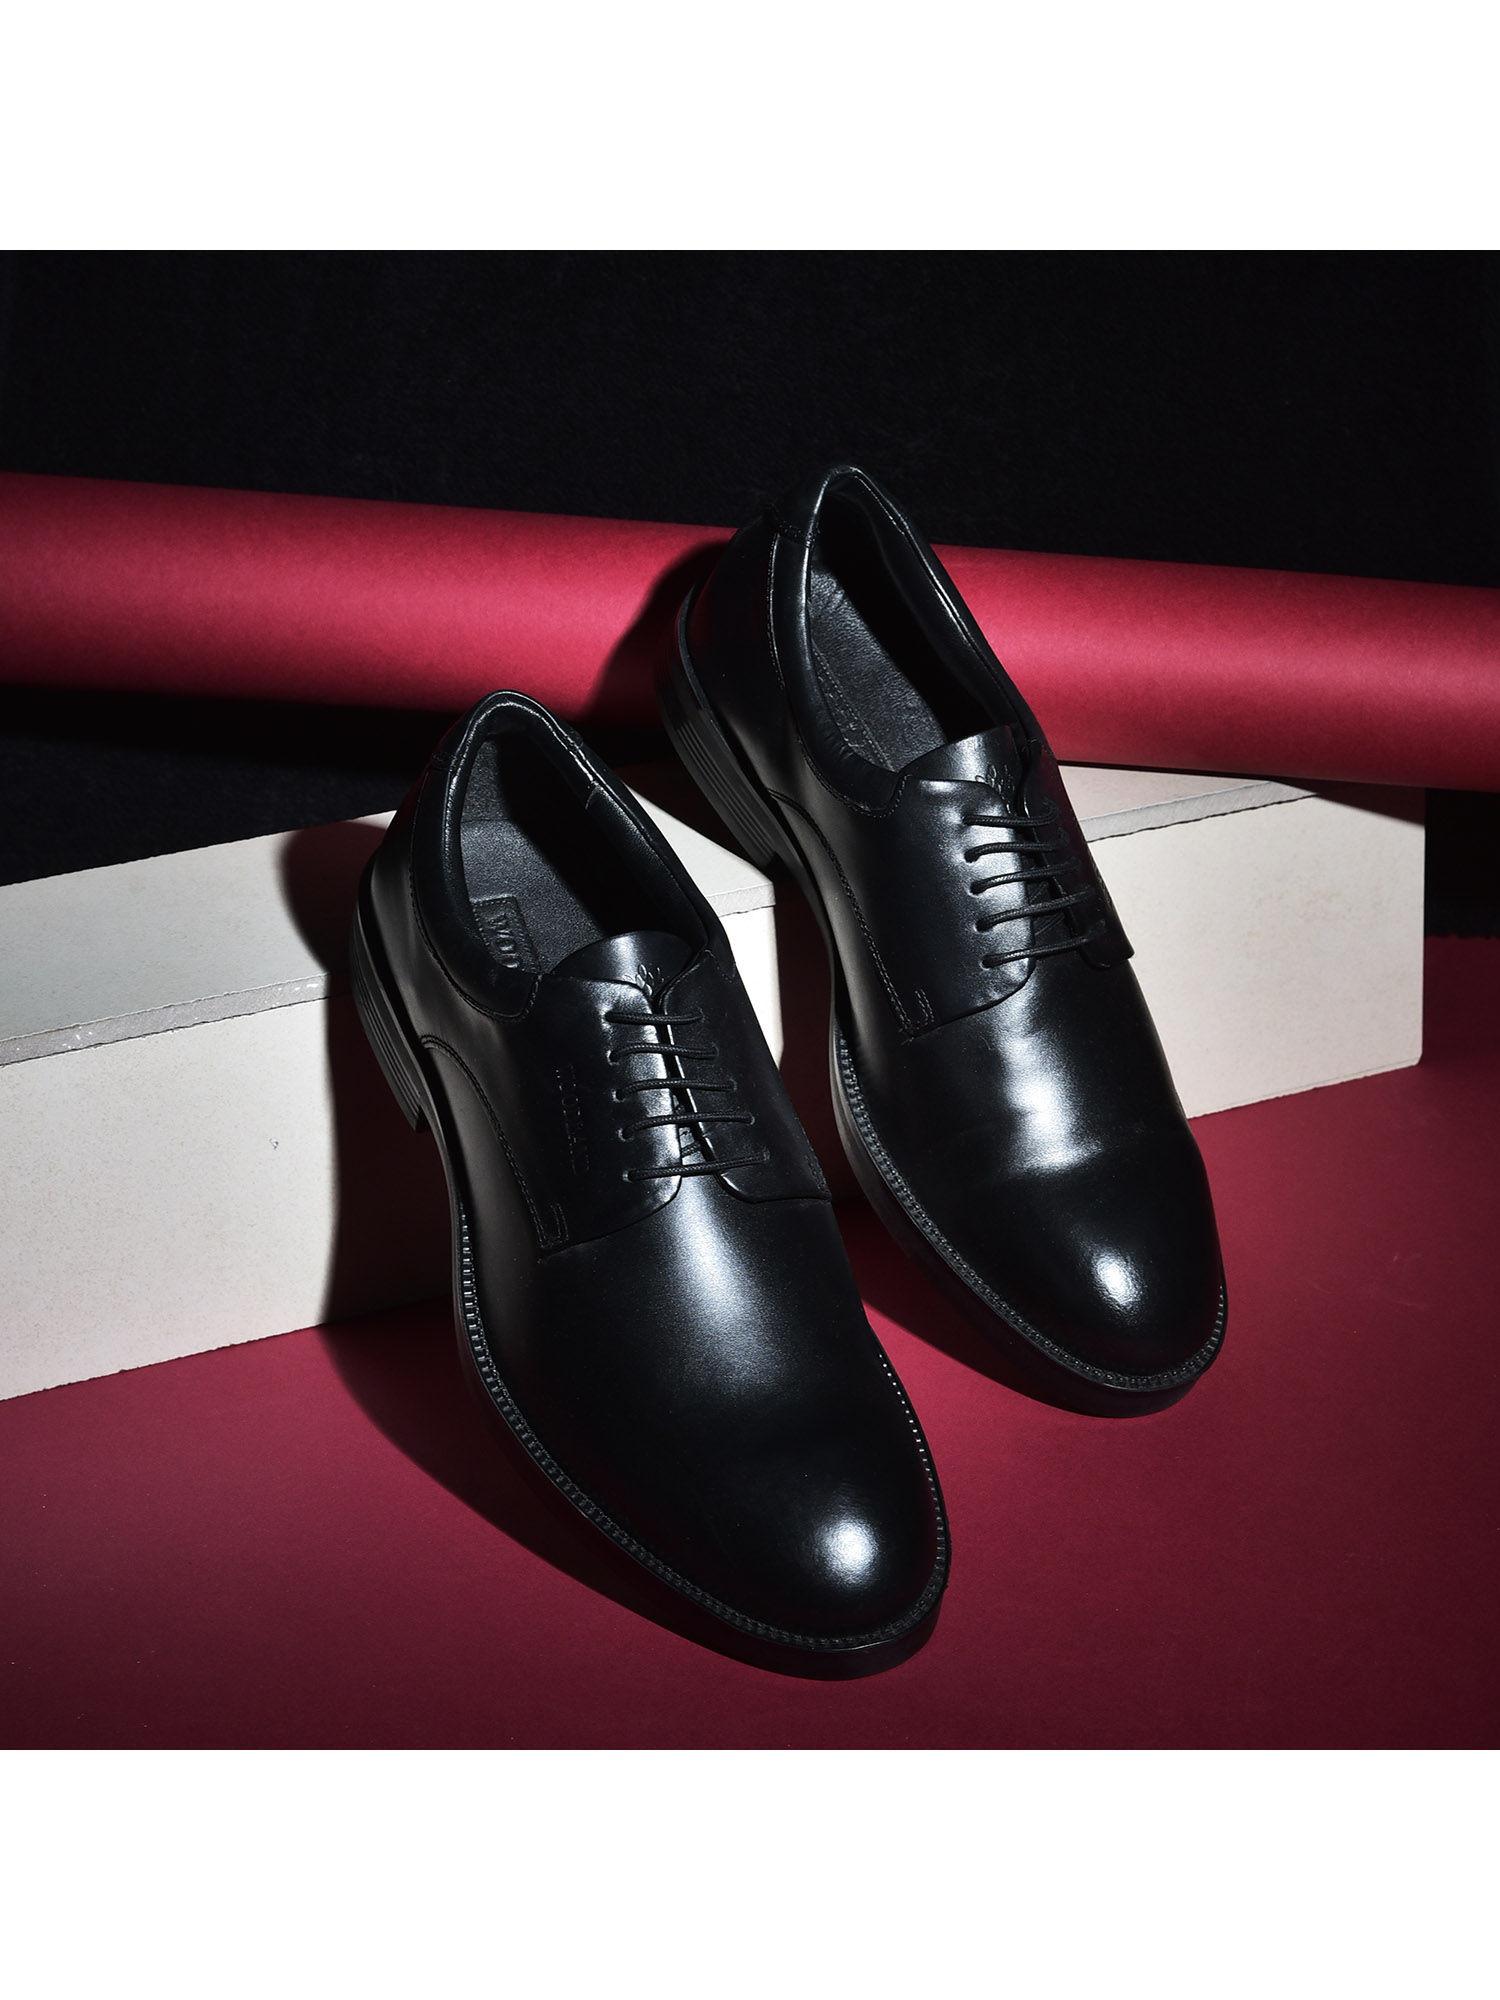 black-formal-derby-shoes